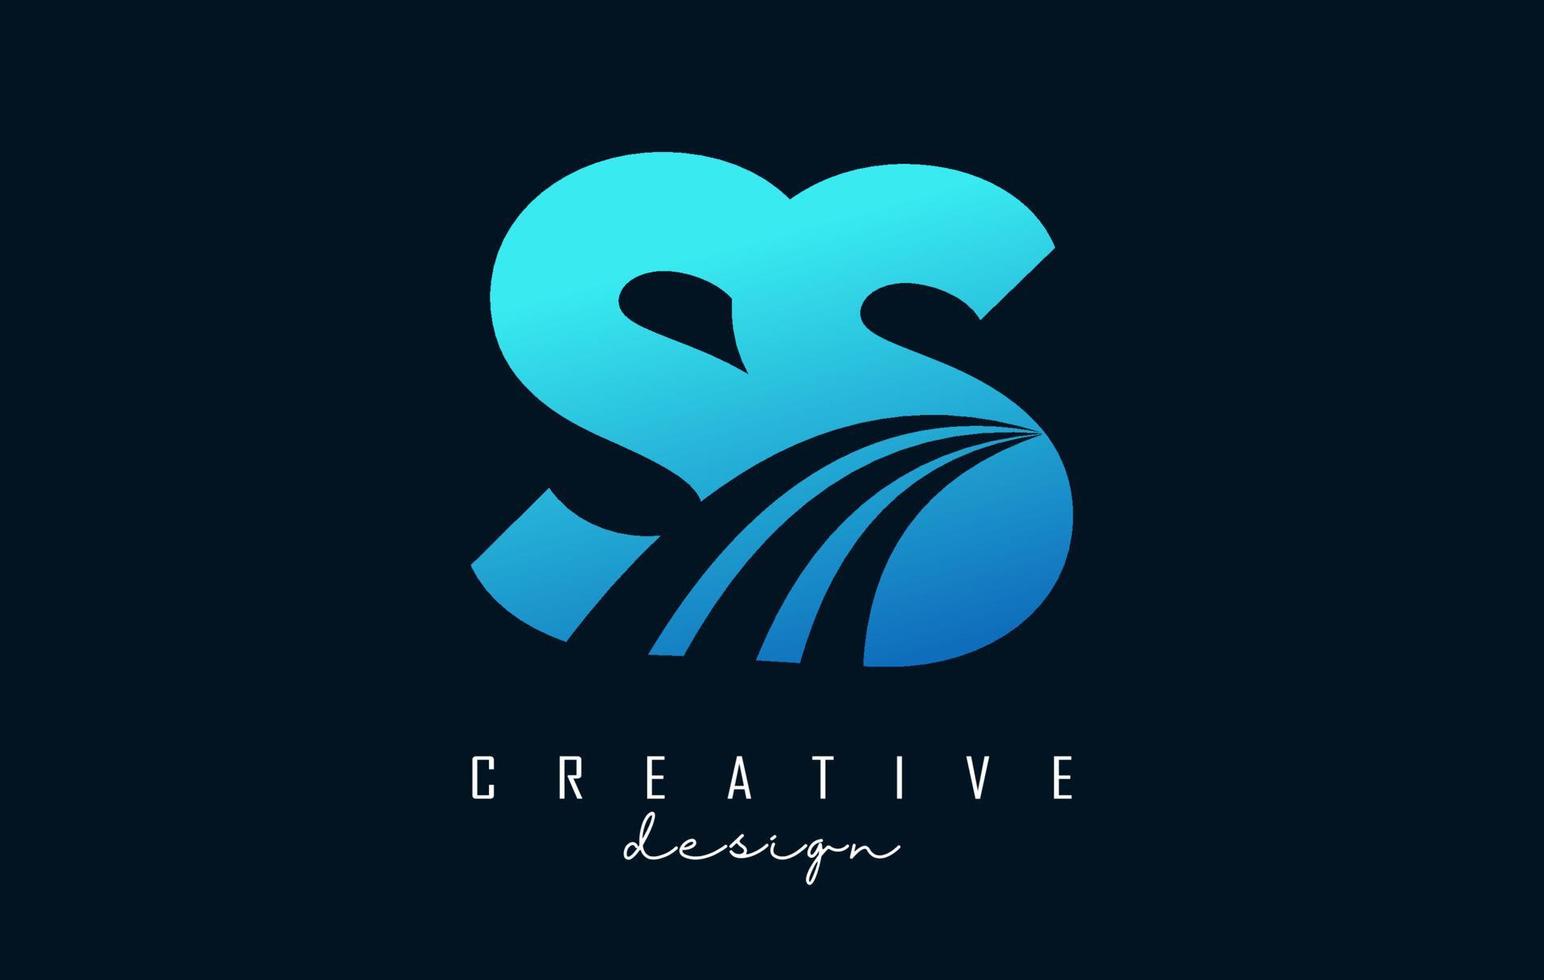 lettres bleues créatives ss s logo avec lignes directrices et conception de concept de route. lettres avec un dessin géométrique. vecteur